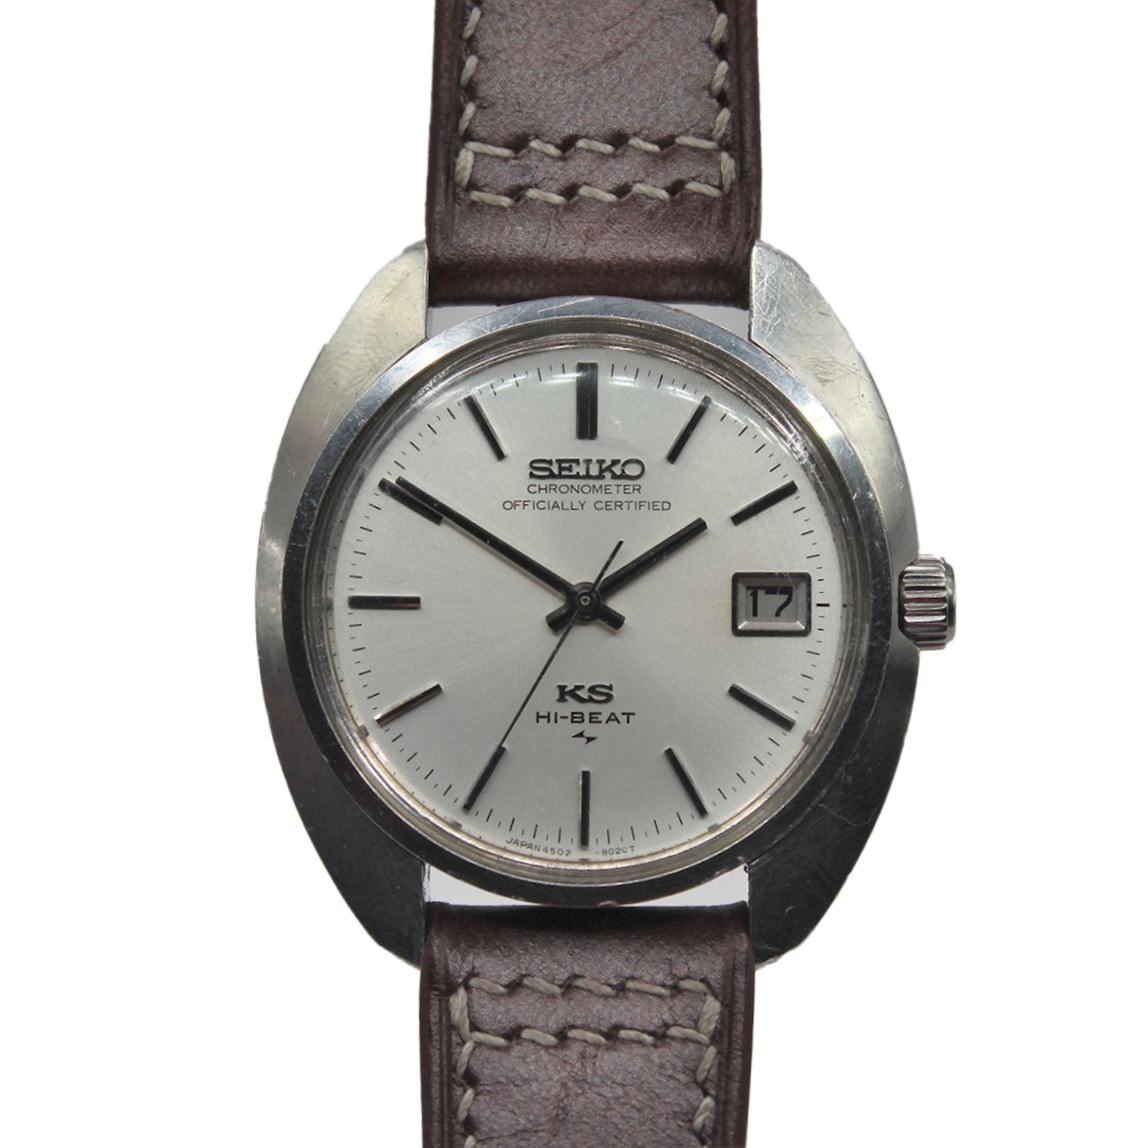 Vintage King Seiko Hi-Beat Chronometer 4502-8010 - Toronto Vintage Watches  - Vintage Seiko passion